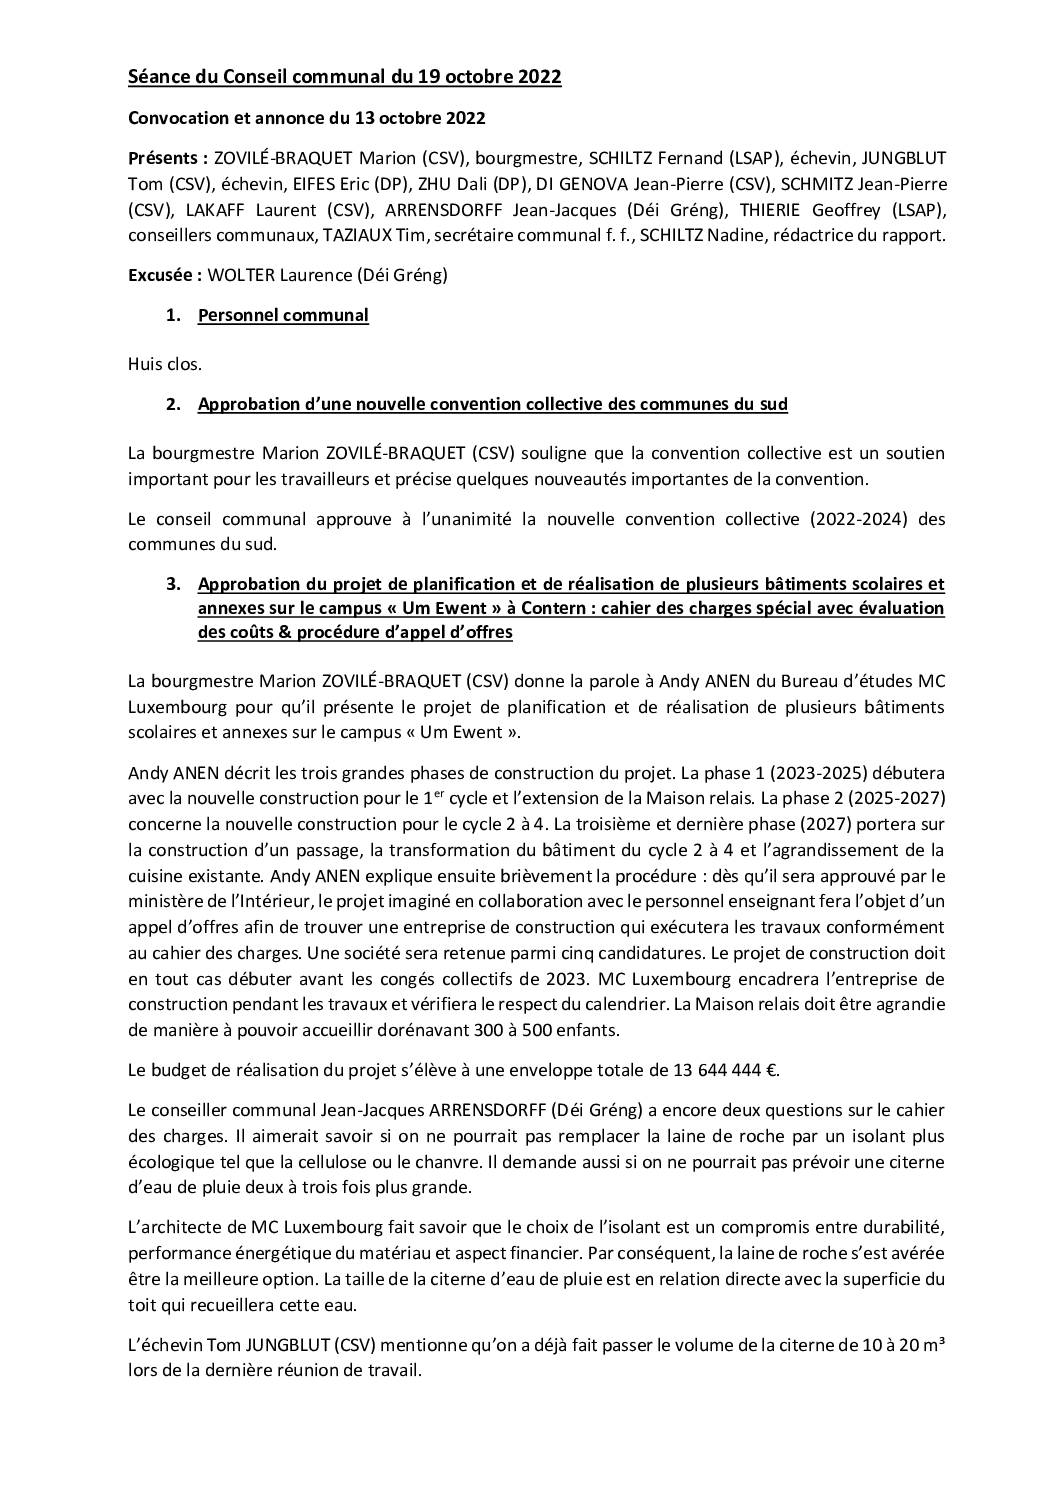 2022-10-19-Rapport-du-Conseil-communal